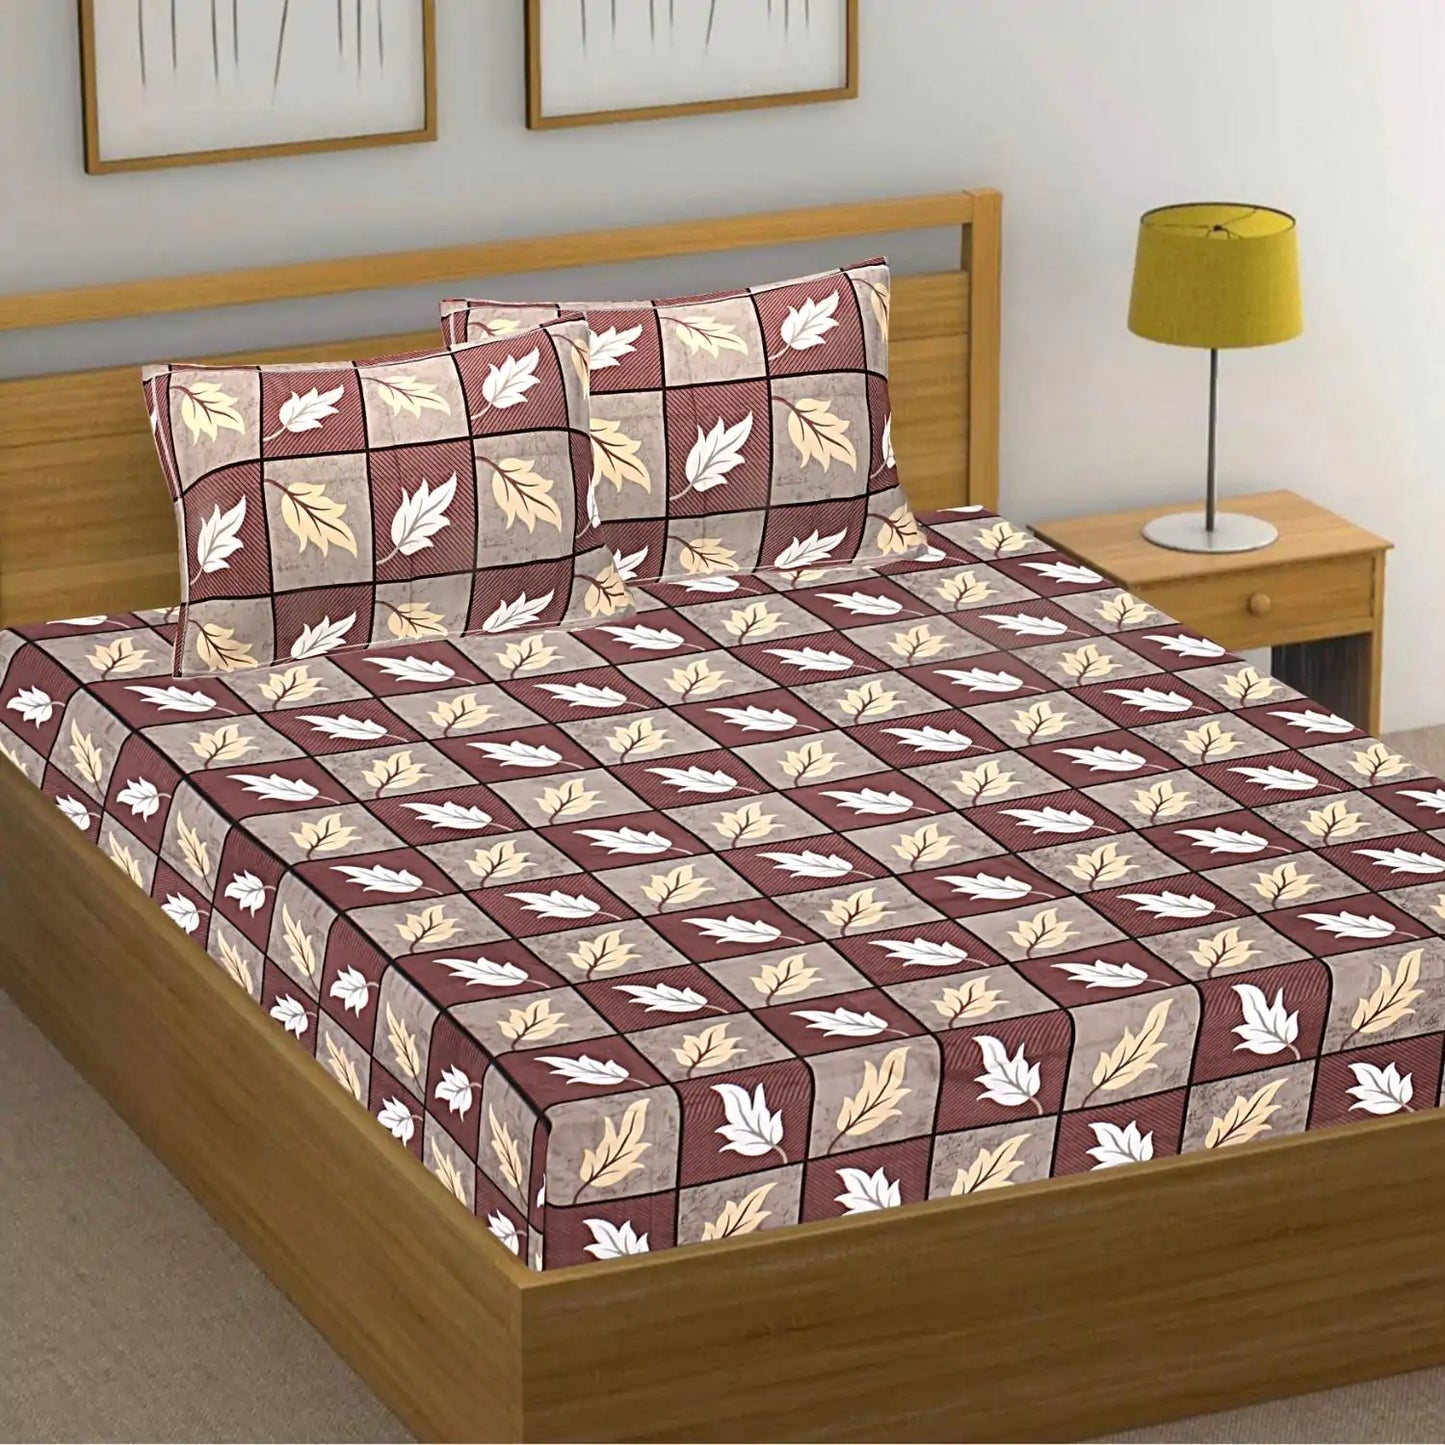 Woodblock Printed Bedsheet